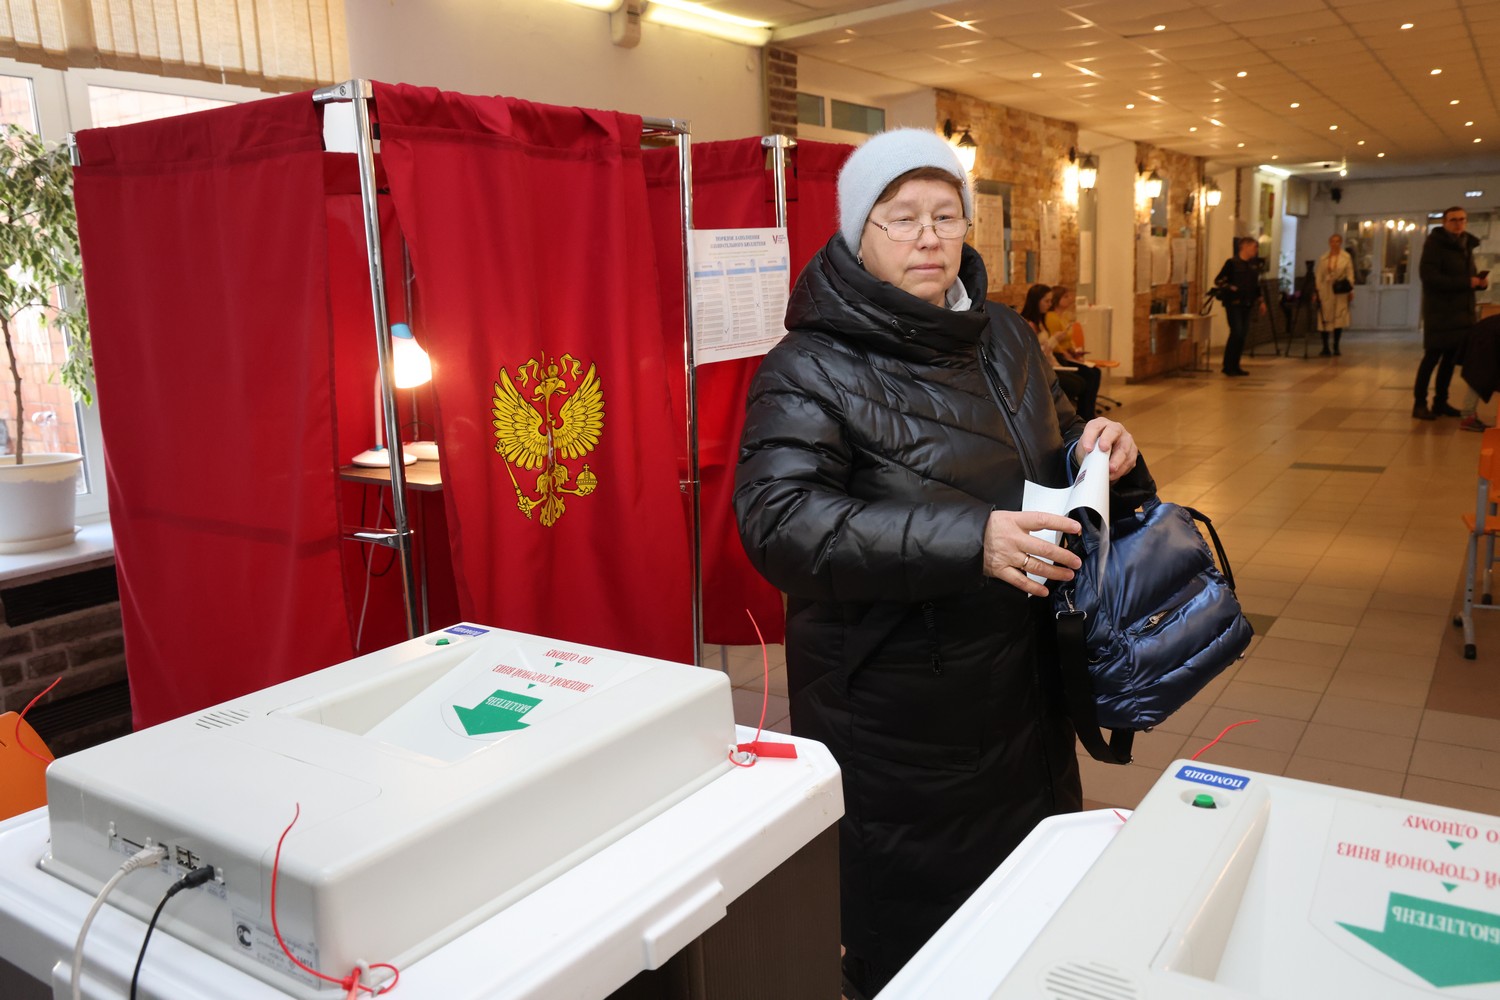 362 298 нижегородцев посетили избирательные участки по данным на 15.00 15 марта